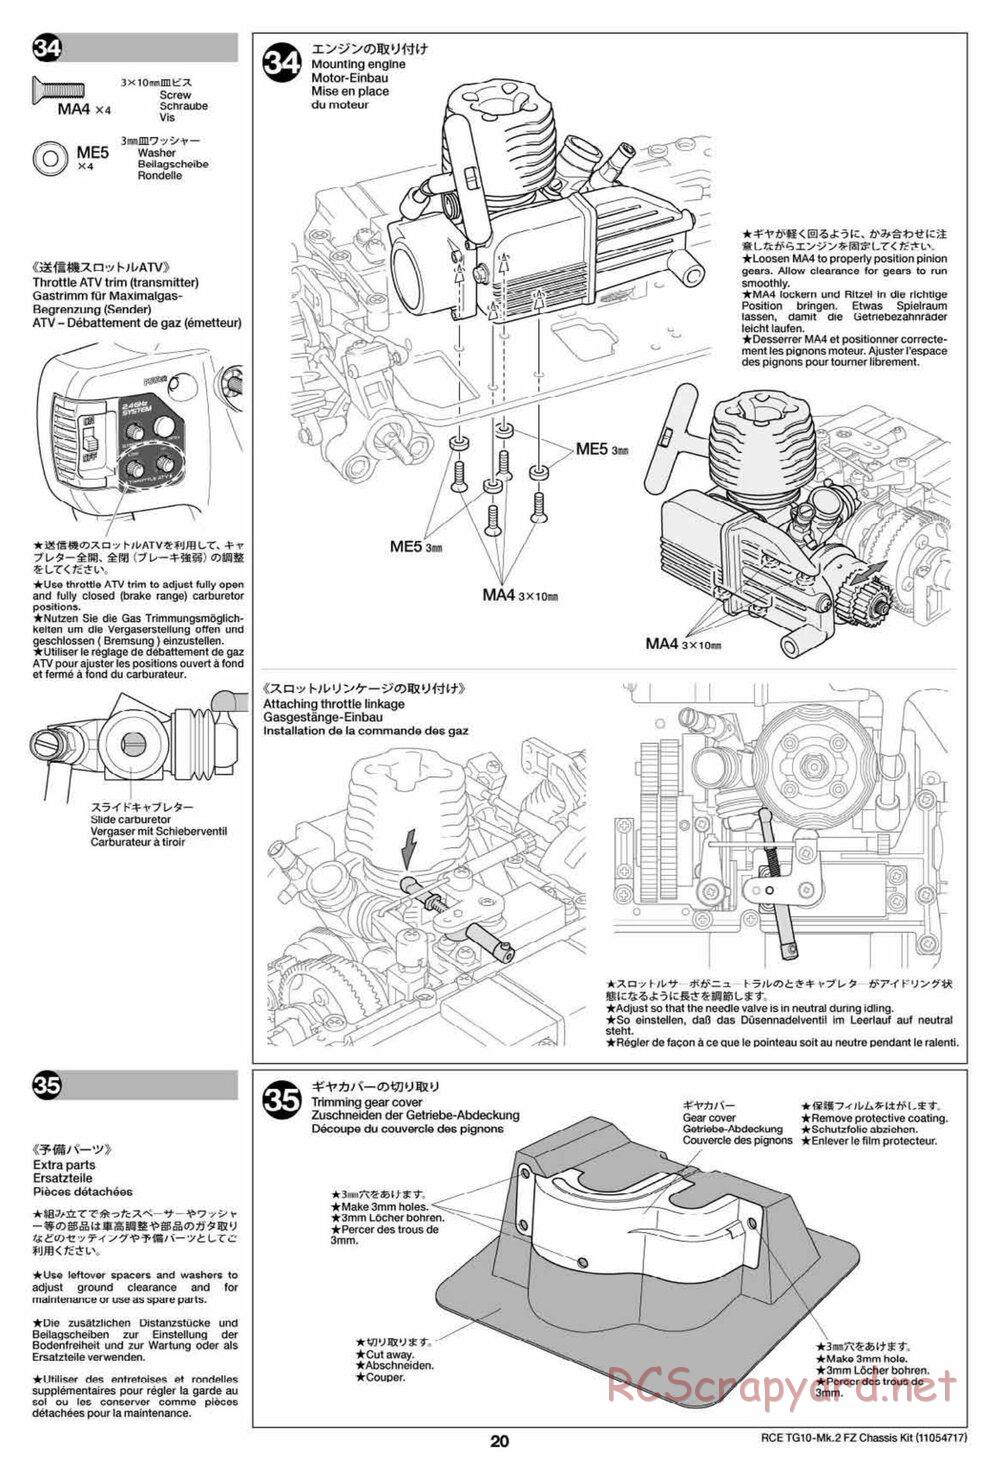 Tamiya - TG10 Mk.2 FZ Chassis - Manual - Page 20